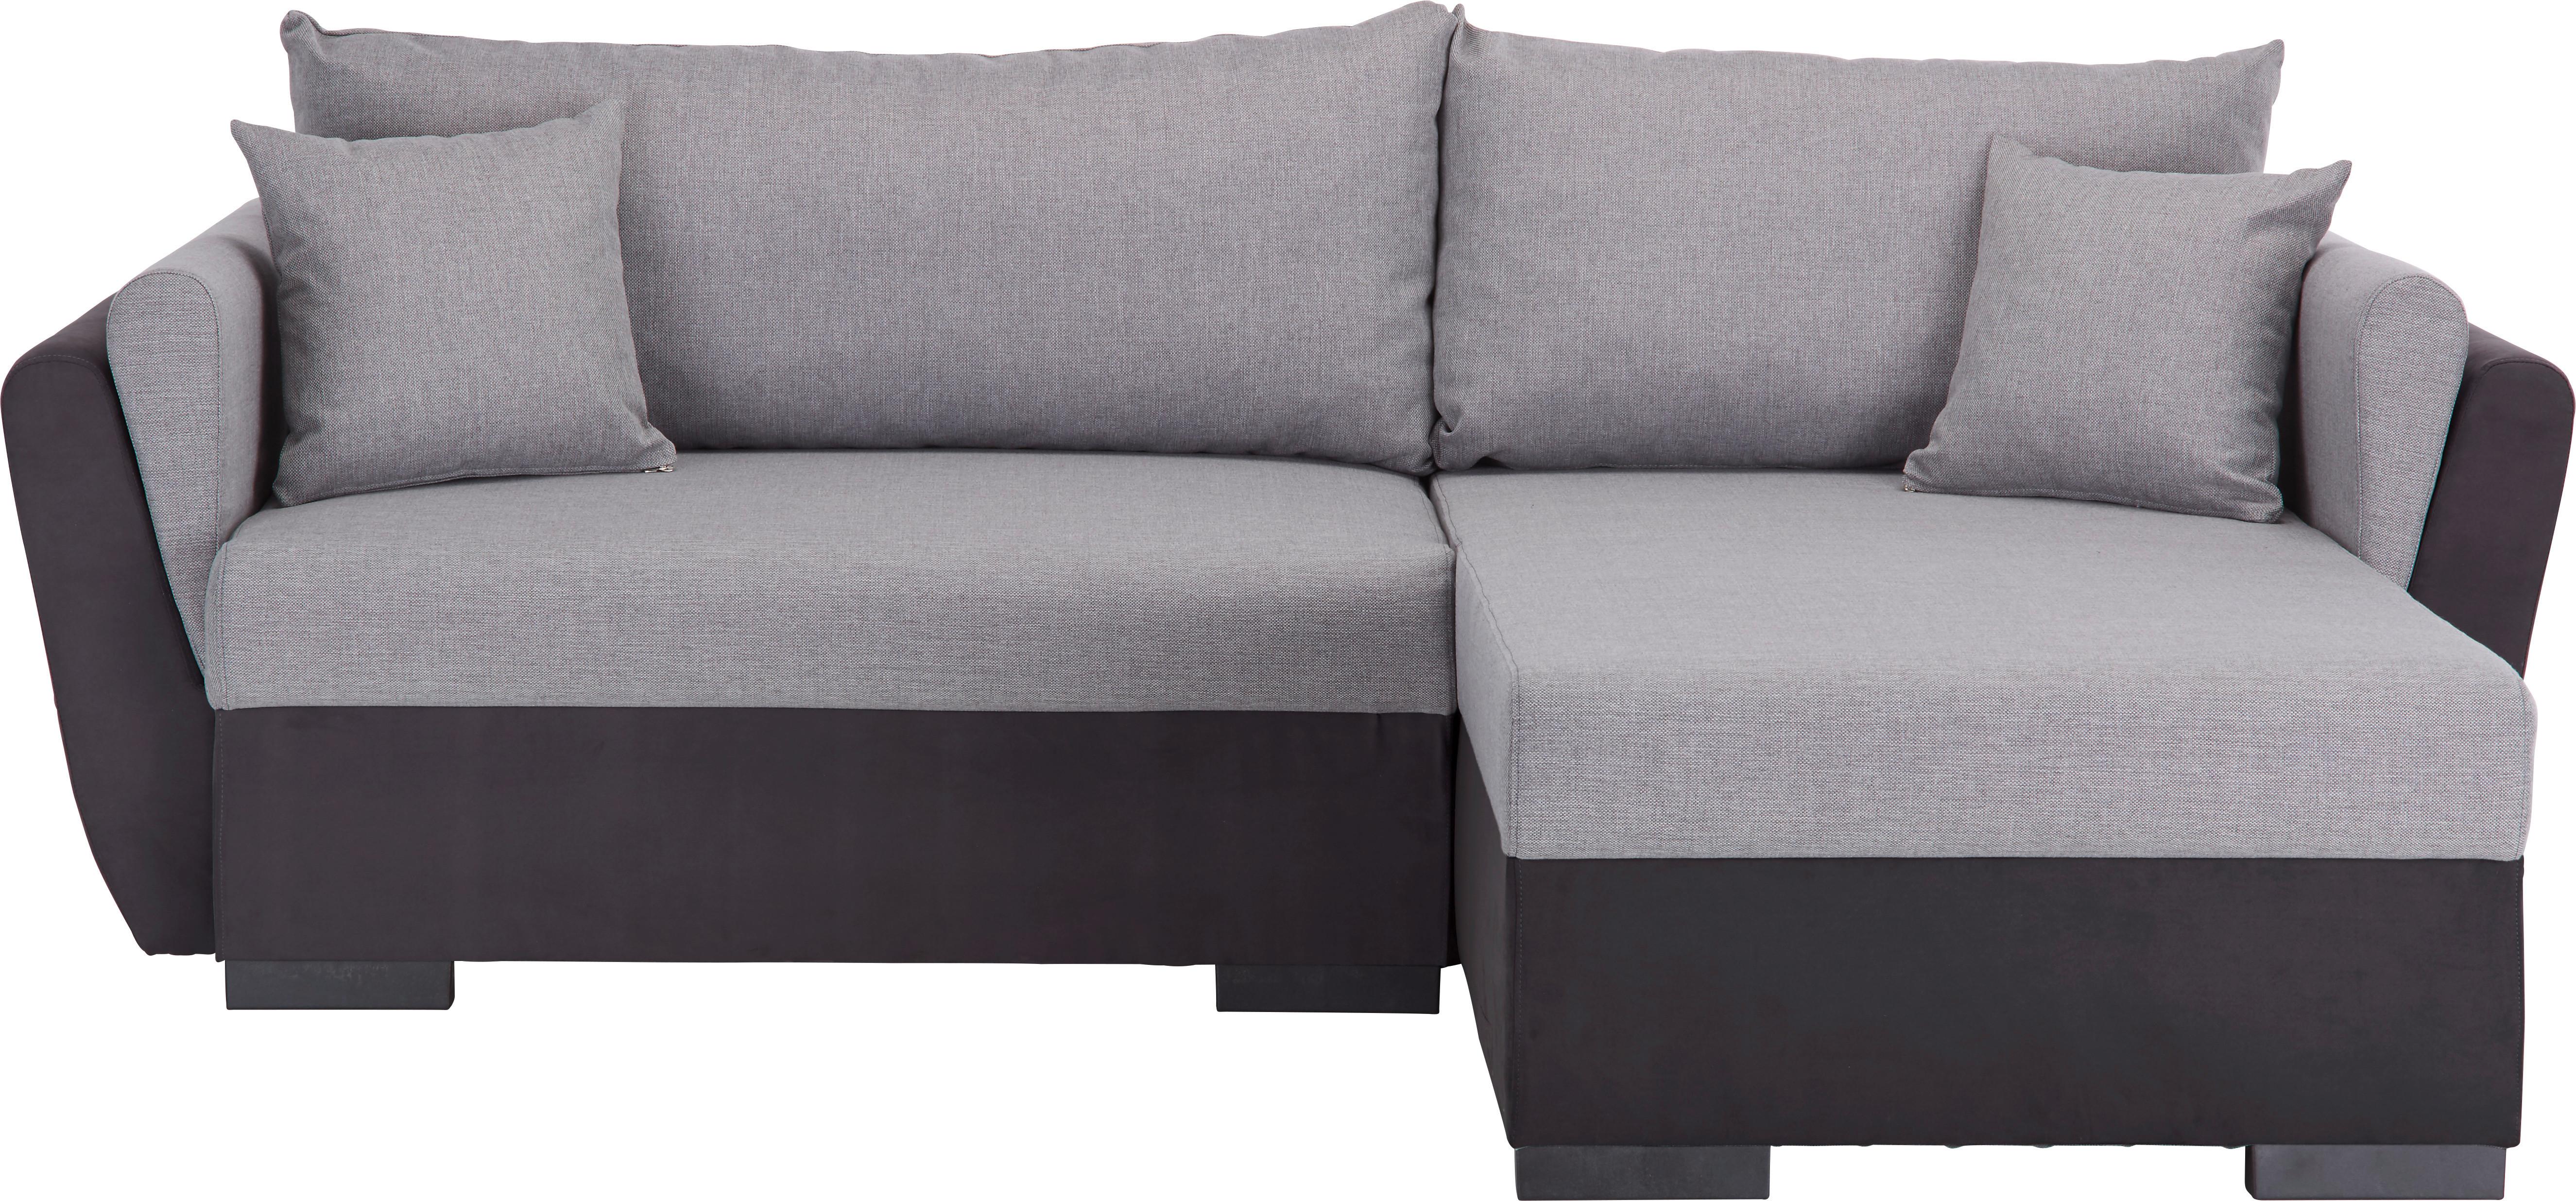 Kotna Sedežna Garnitura Lugano - siva/črna, Moderno, umetna masa/tekstil (230/167cm) - Based